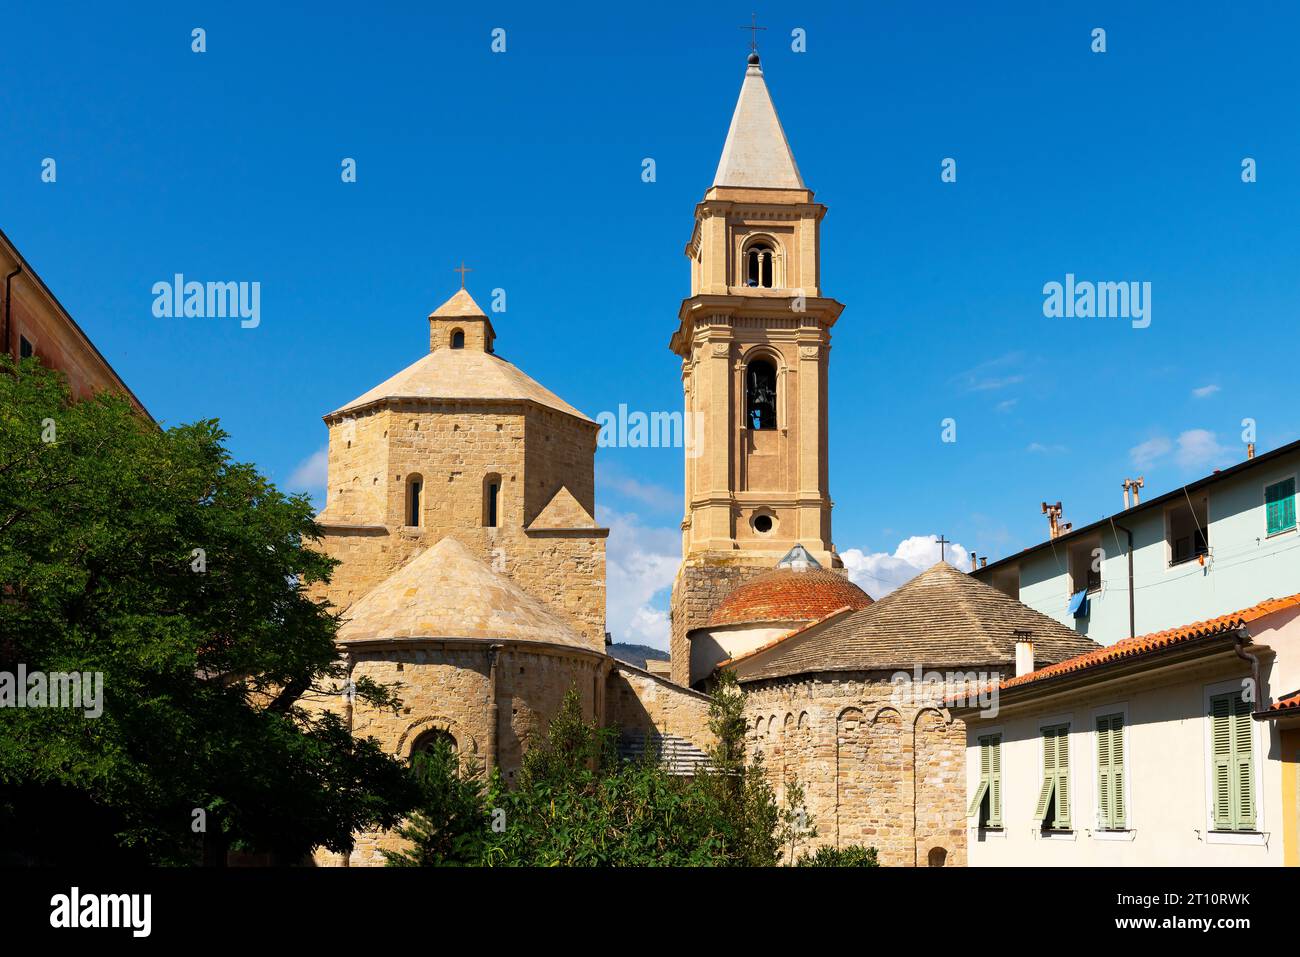 Catedral románica de Ventimiglia, dedicada a la Asunción, que data de los siglos XI - XIII. Liguria, Italia. Foto de stock